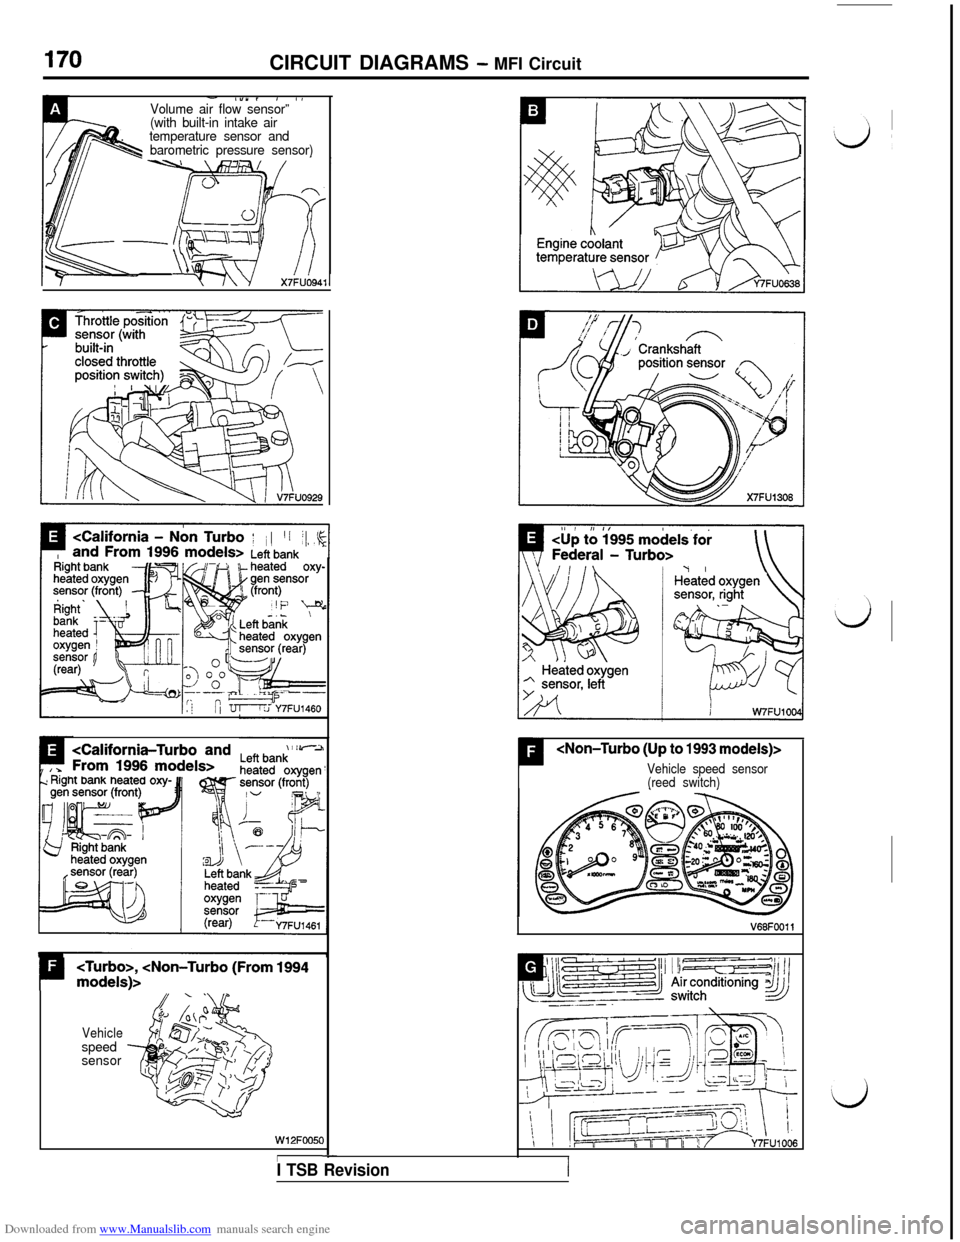 MITSUBISHI 3000GT 1996 2.G Workshop Manual Downloaded from www.Manualslib.com manuals search engine CIRCUIT DIAGRAMS - MFI Circuit
- l”“, , IVolume air flow sensor”’.(with built-in intake air
temperature sensor and
barometric pressure 